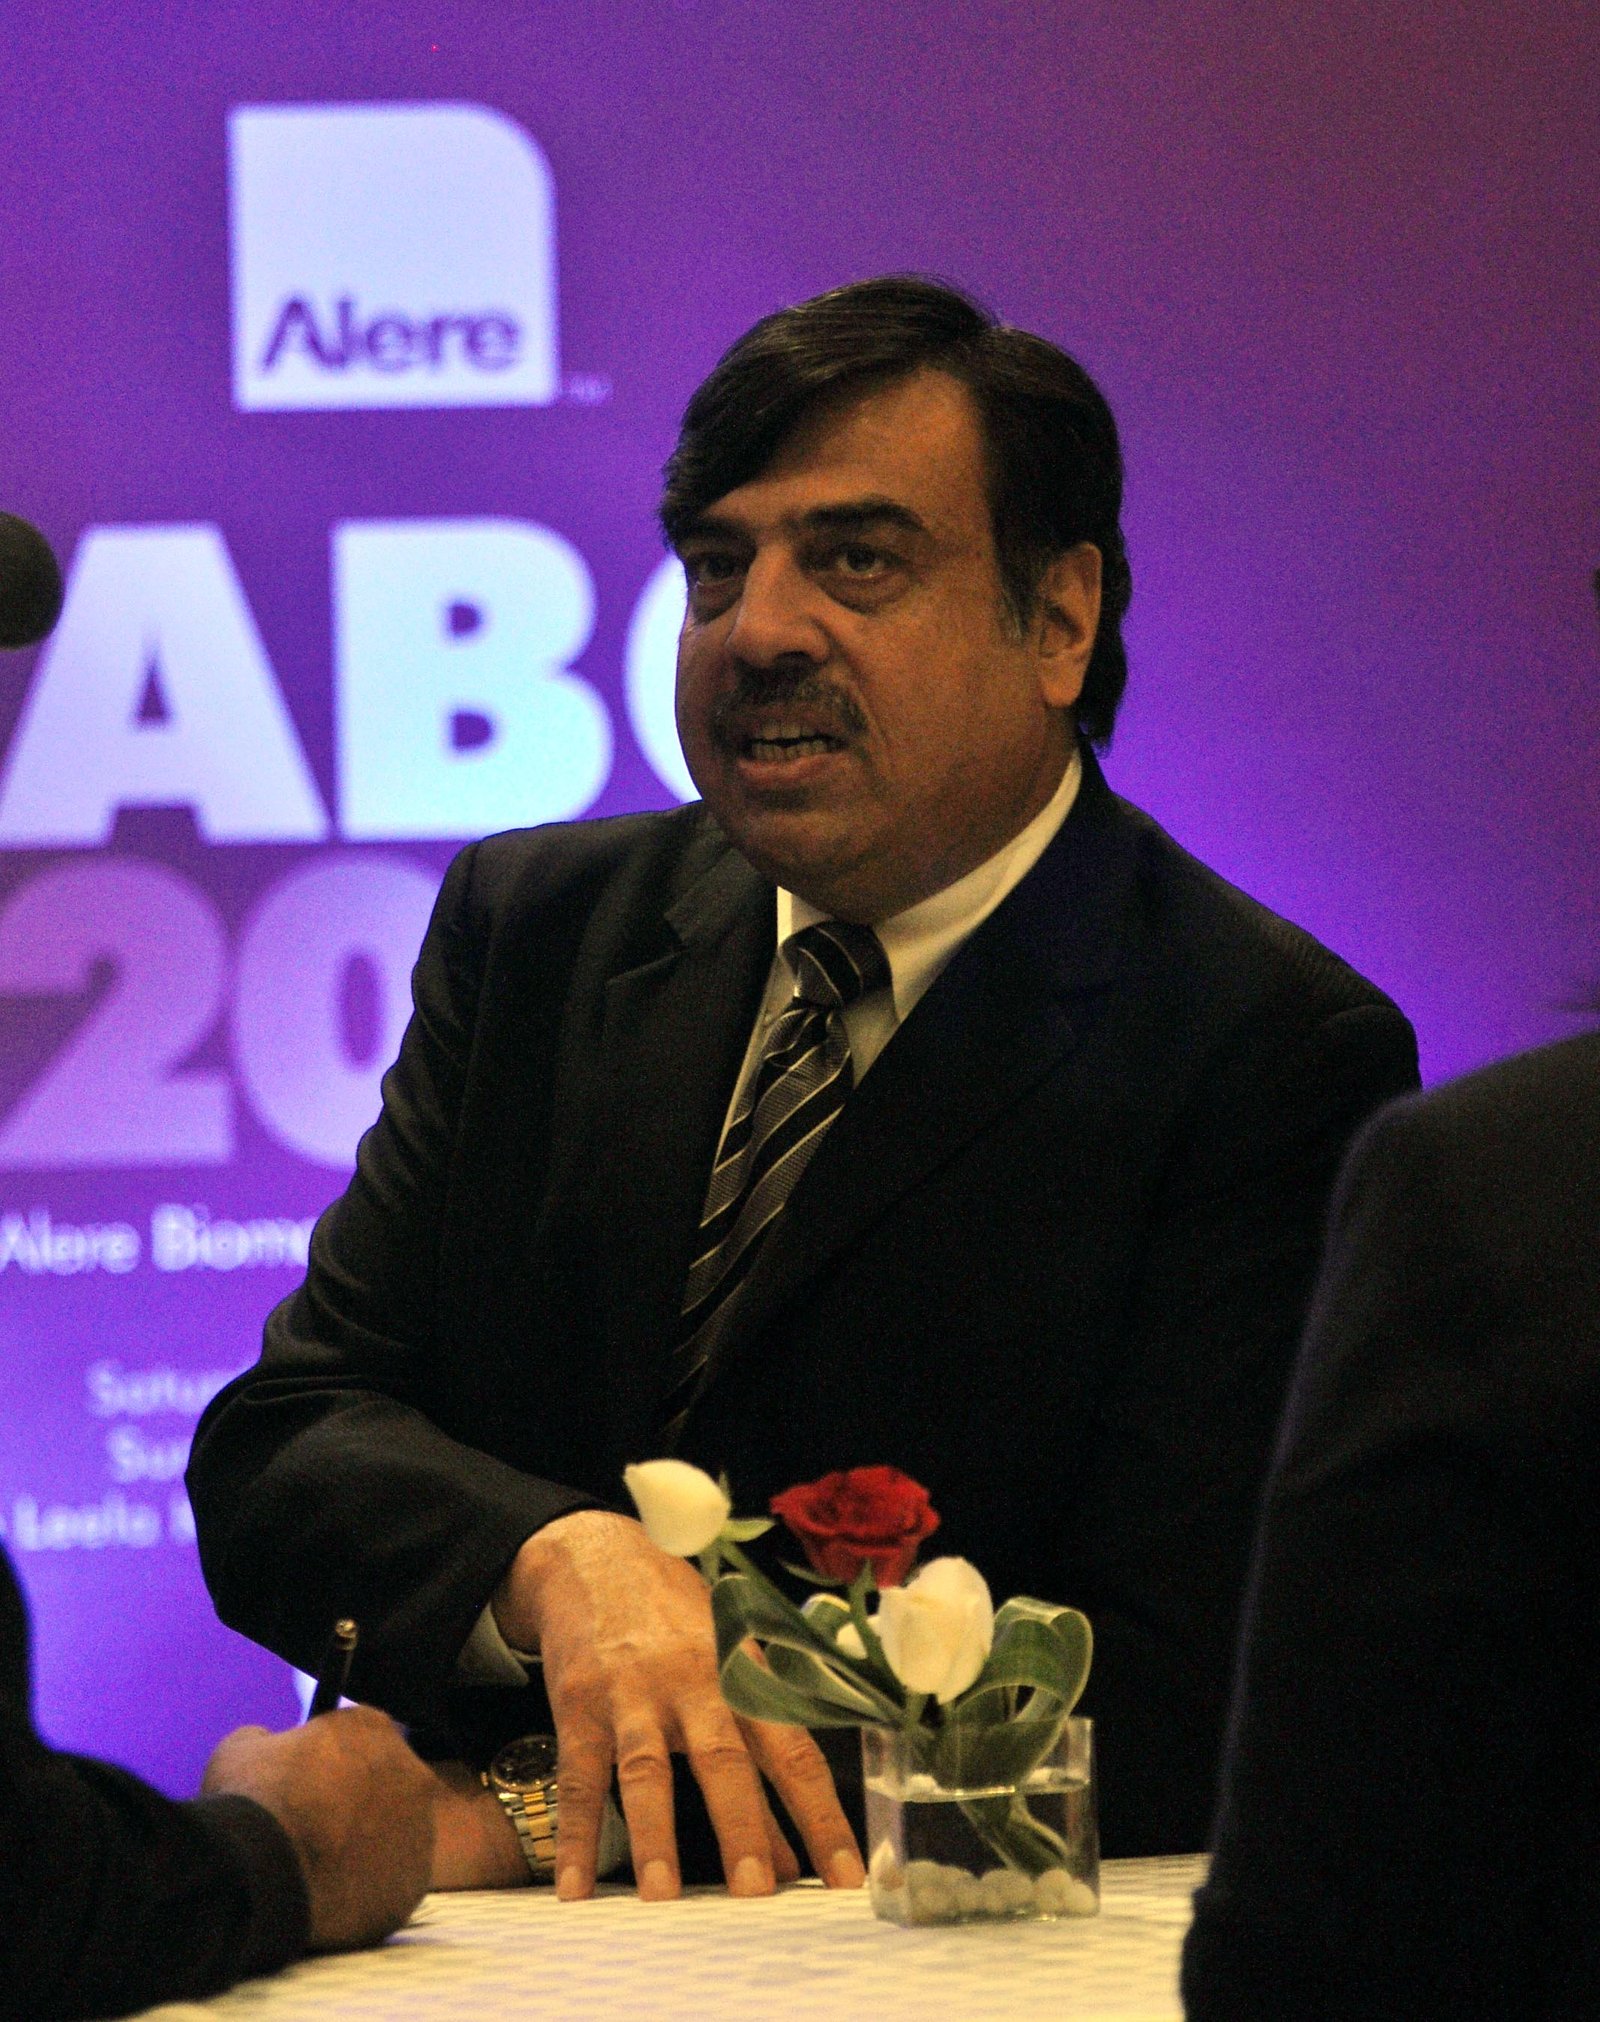 Mr Sanjeev Johar, CEO, Alere India